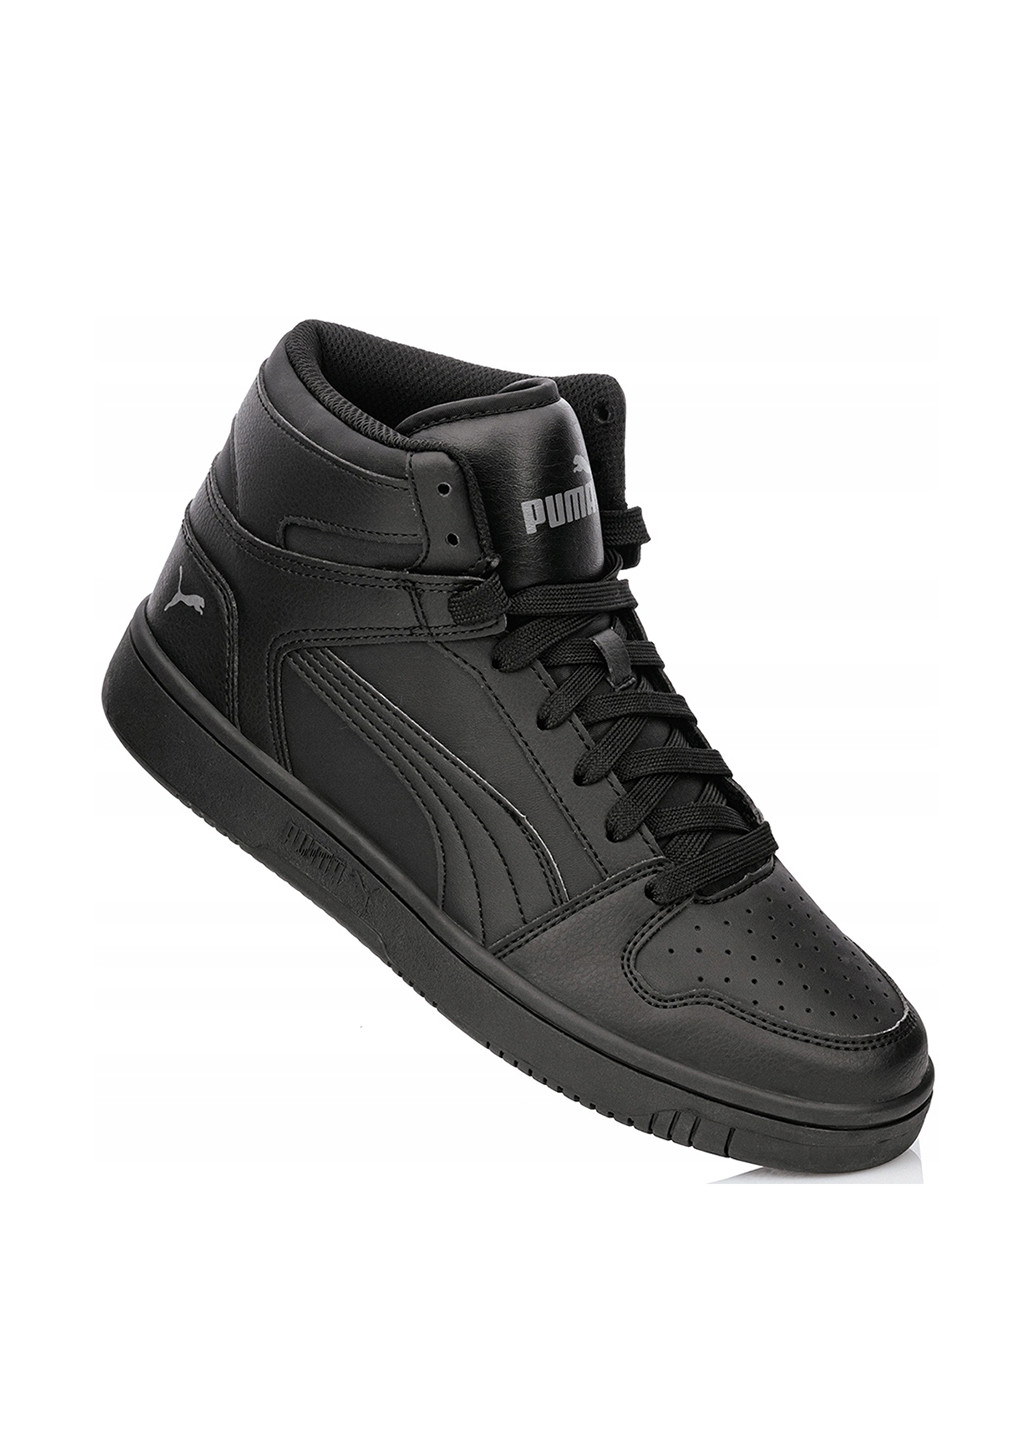 Черные осенние ботинки Puma